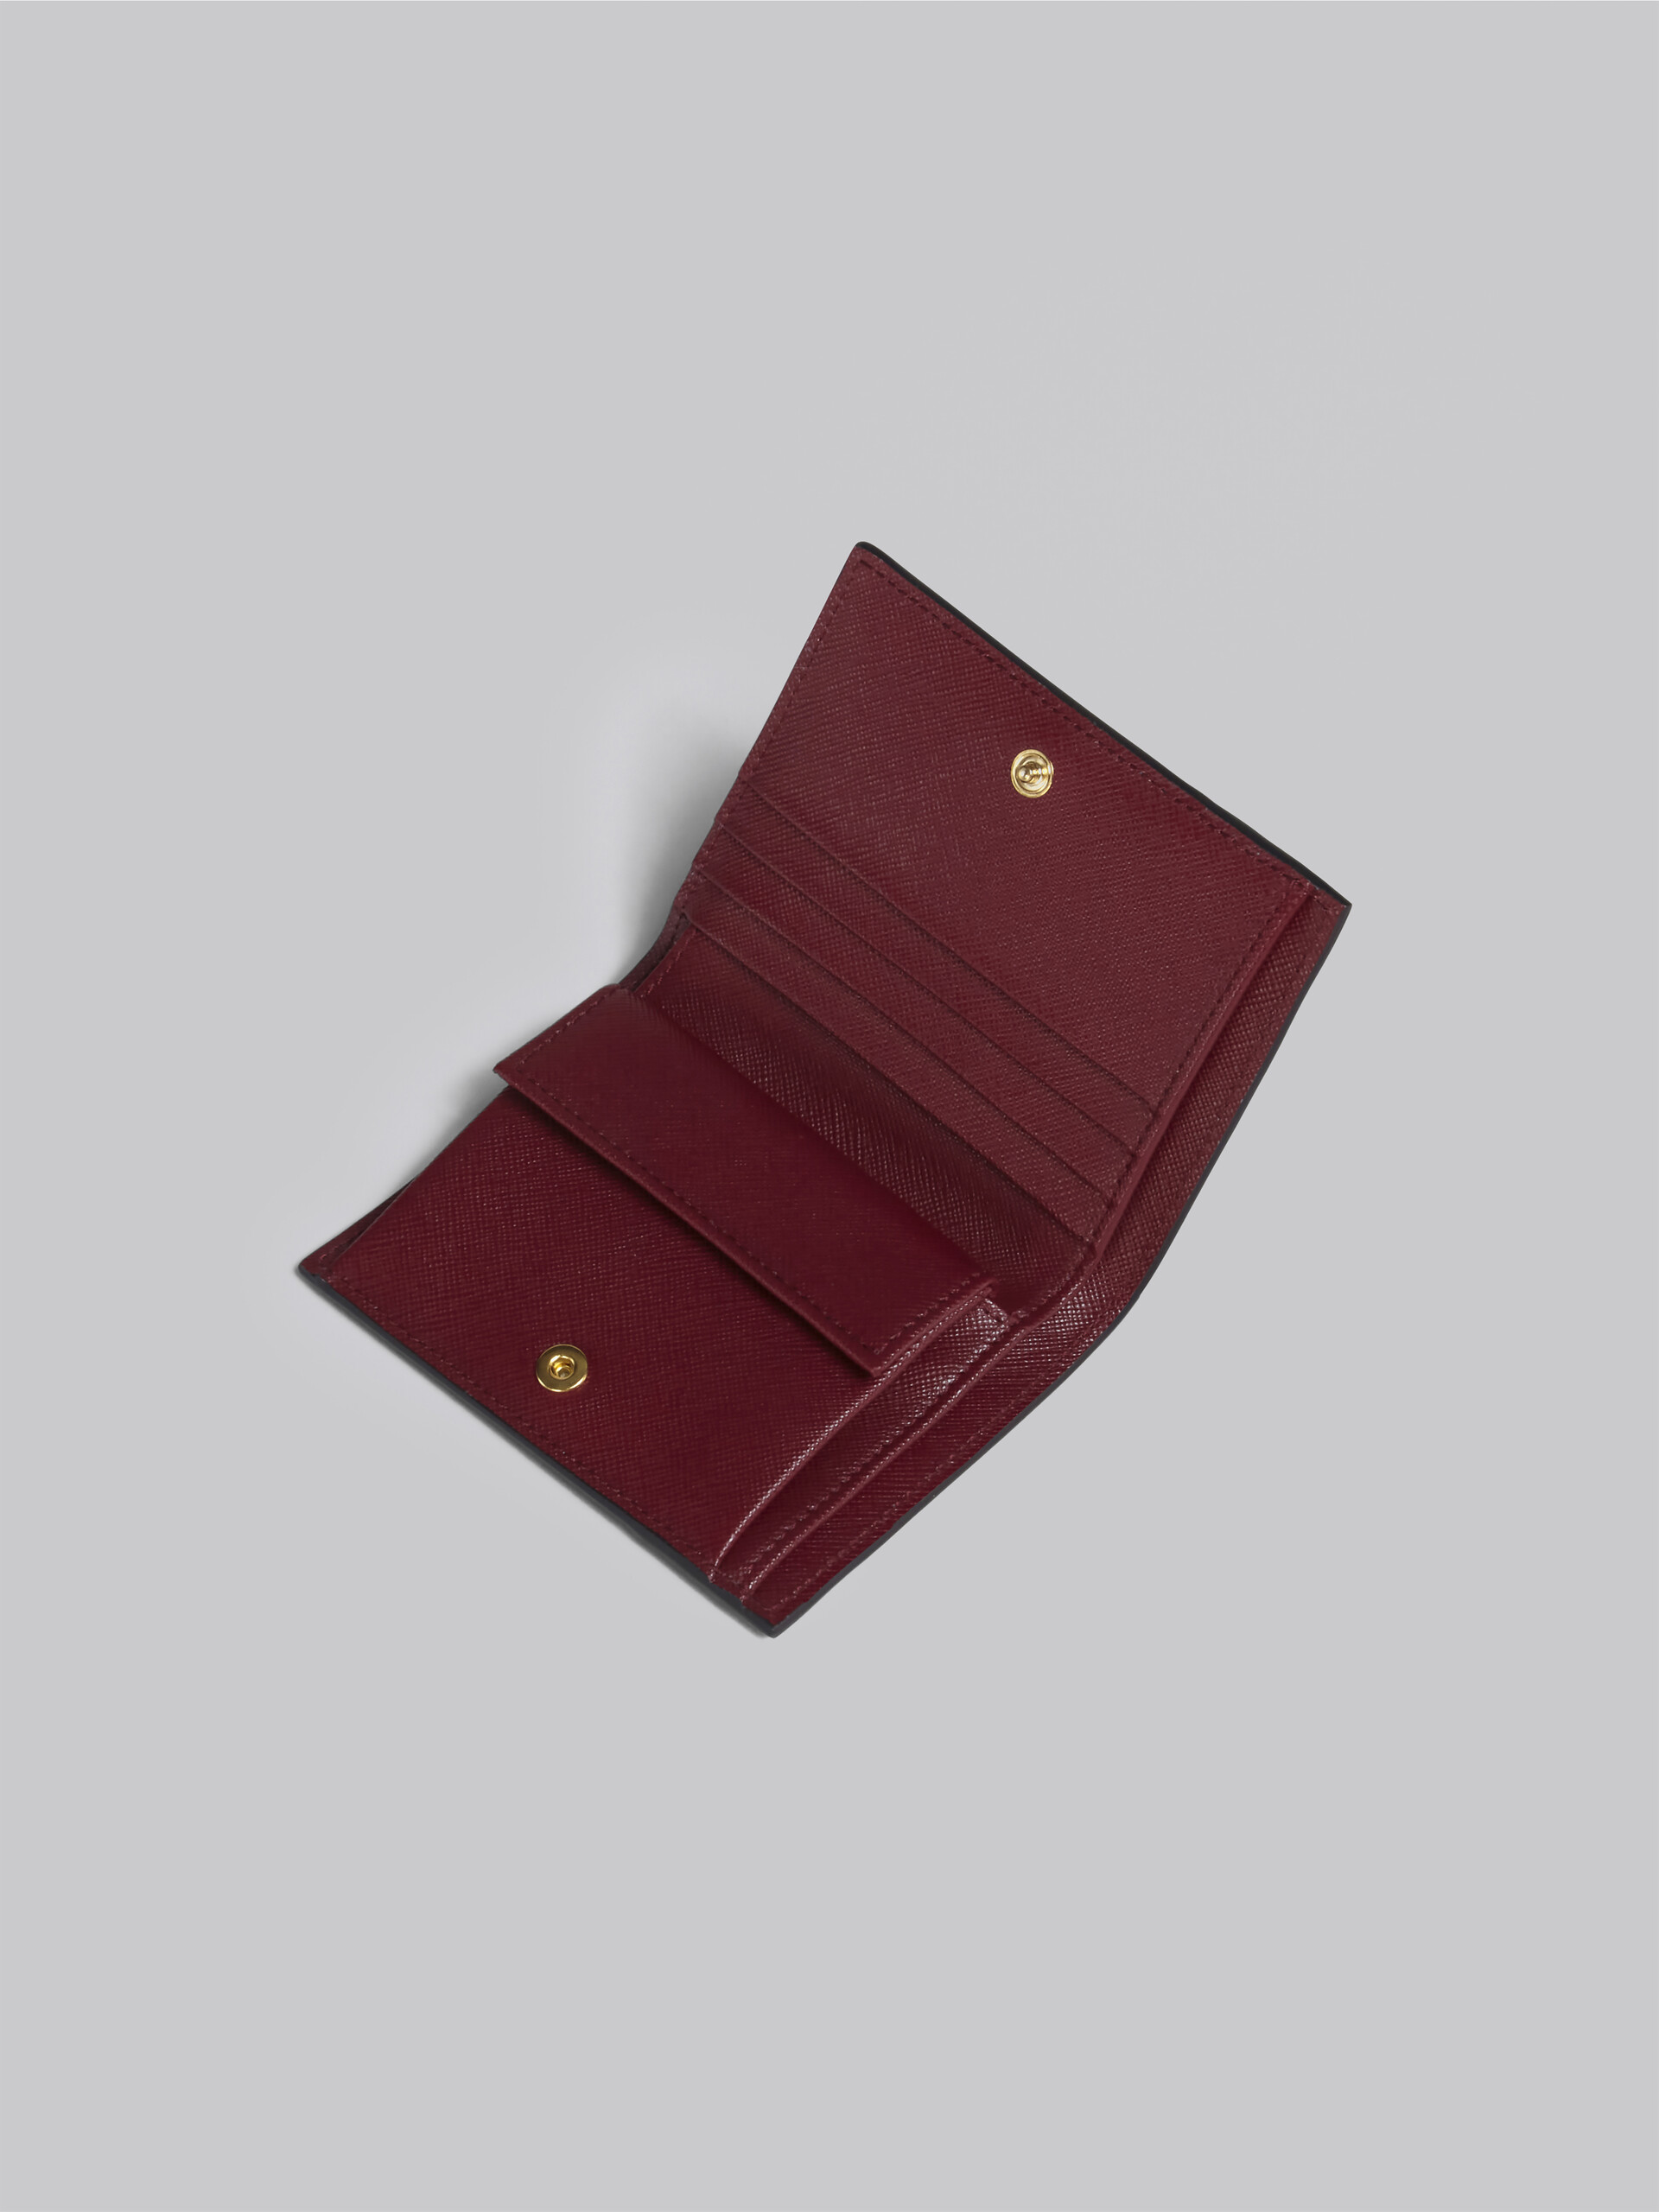 Portafoglio bi-fold in saffiano blu grigio rosso - Portafogli - Image 4